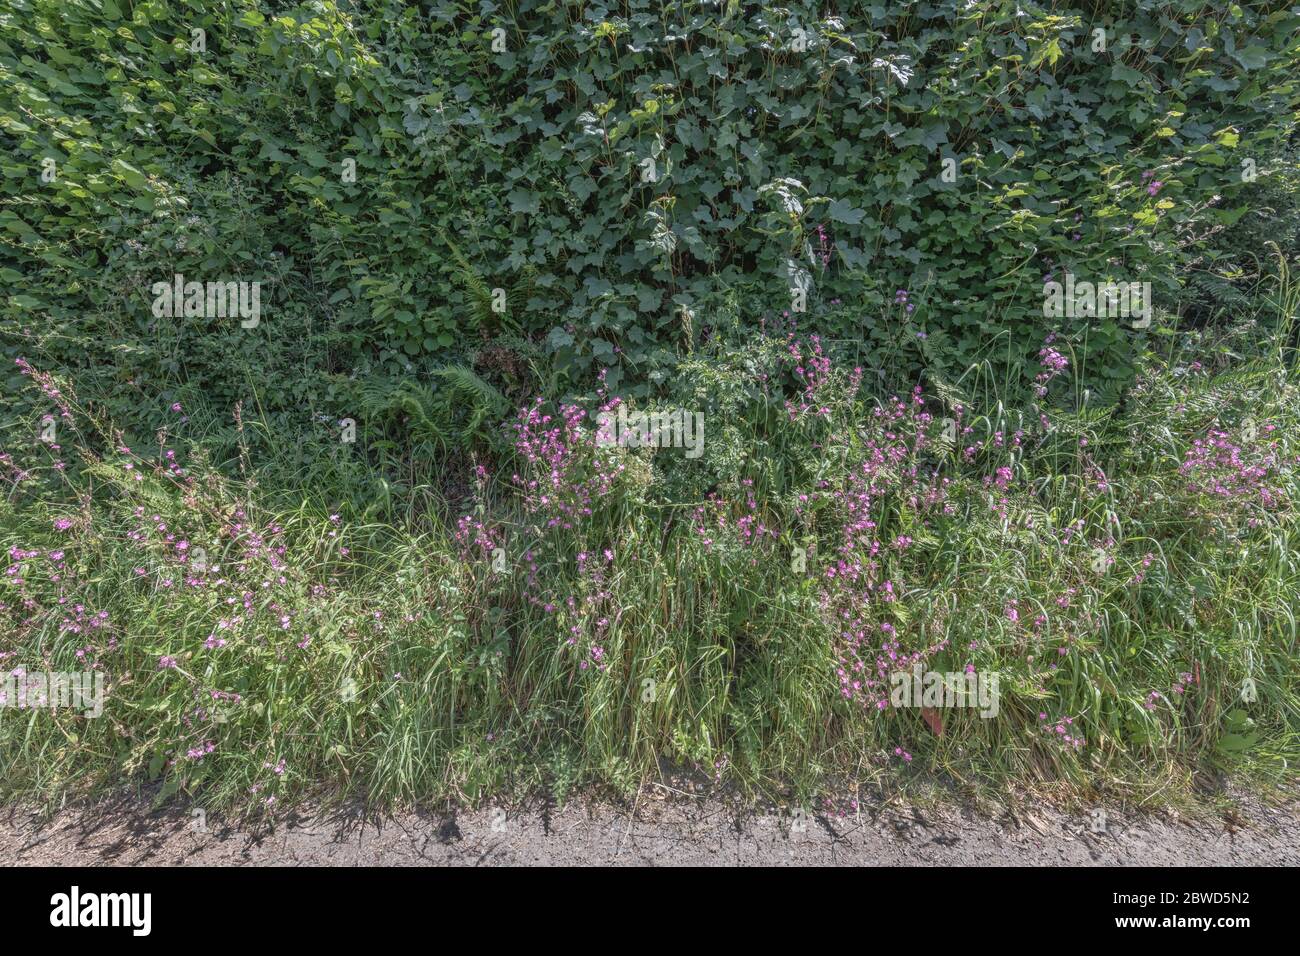 Patch von leuchtend rosa Blüten von UK hedgerow Weed Red Campion / Silene dioica. Gefunden in der Nähe von Wäldern oder schattigen Hecken auf reichen Böden & einmal medizinisch verwendet. Stockfoto